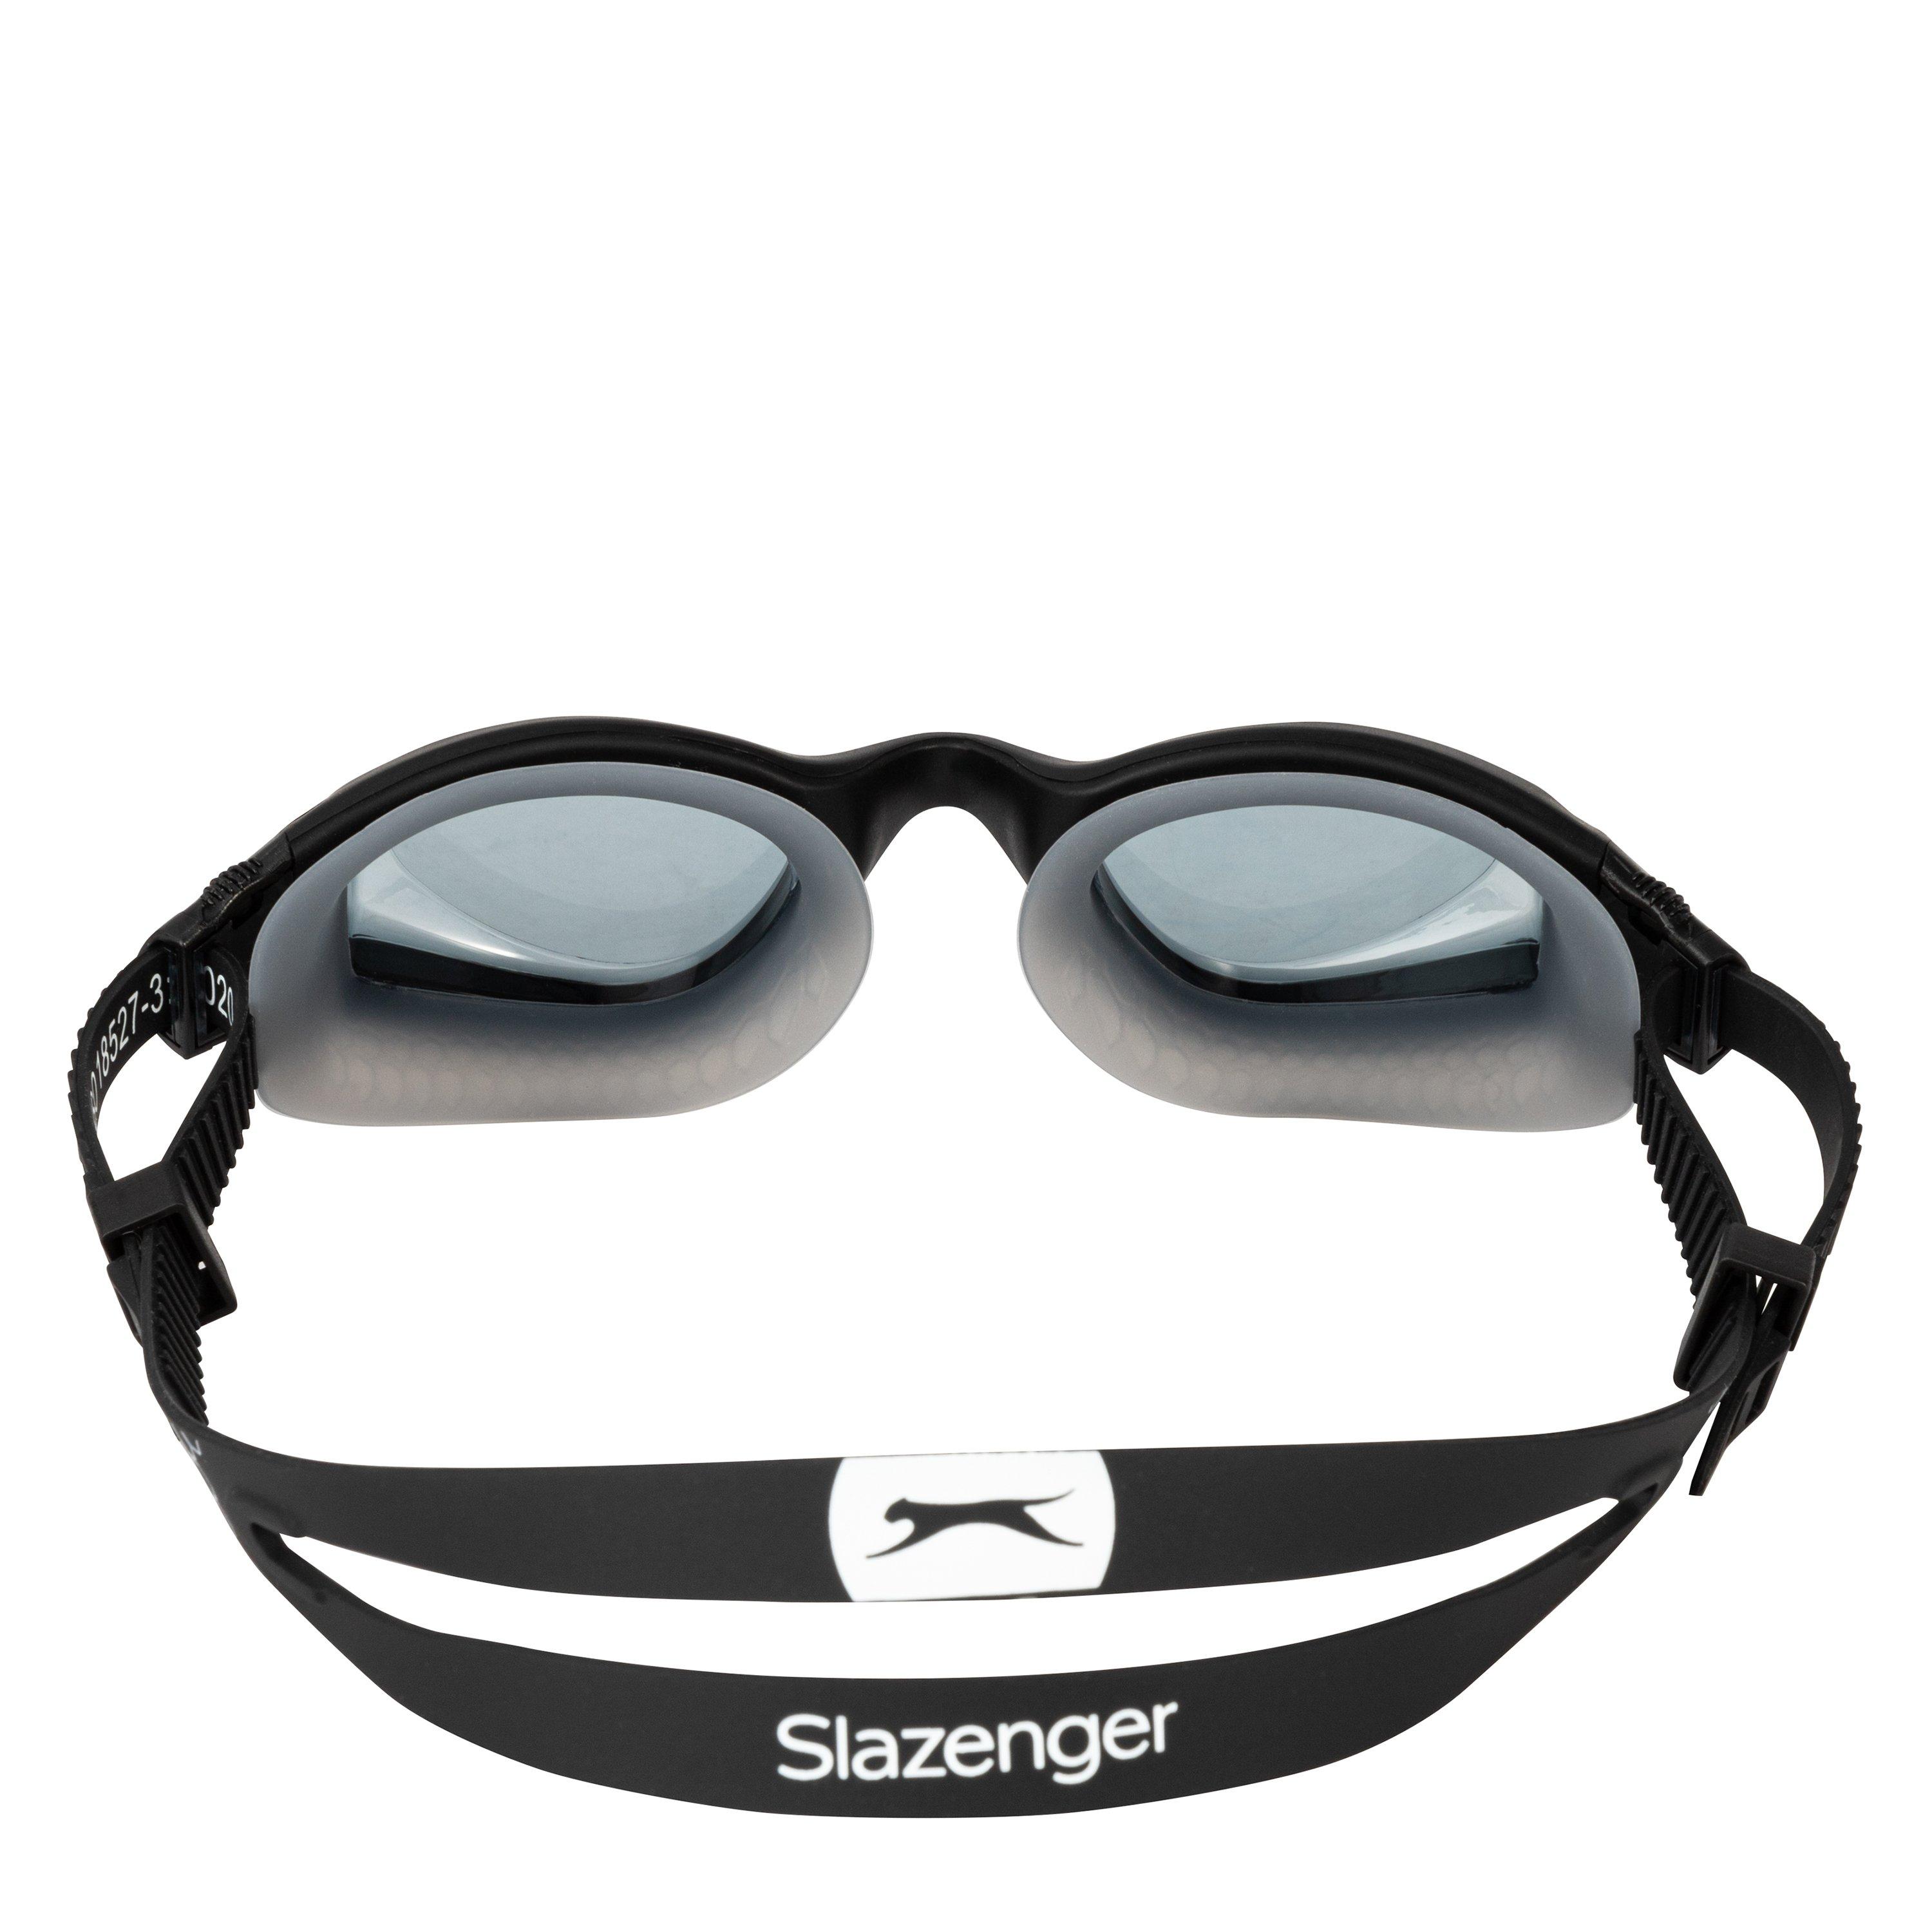 Slazenger sunglasses with black frame and grey lens SL6718.C4 59-17-1356 |  mertzios.gr